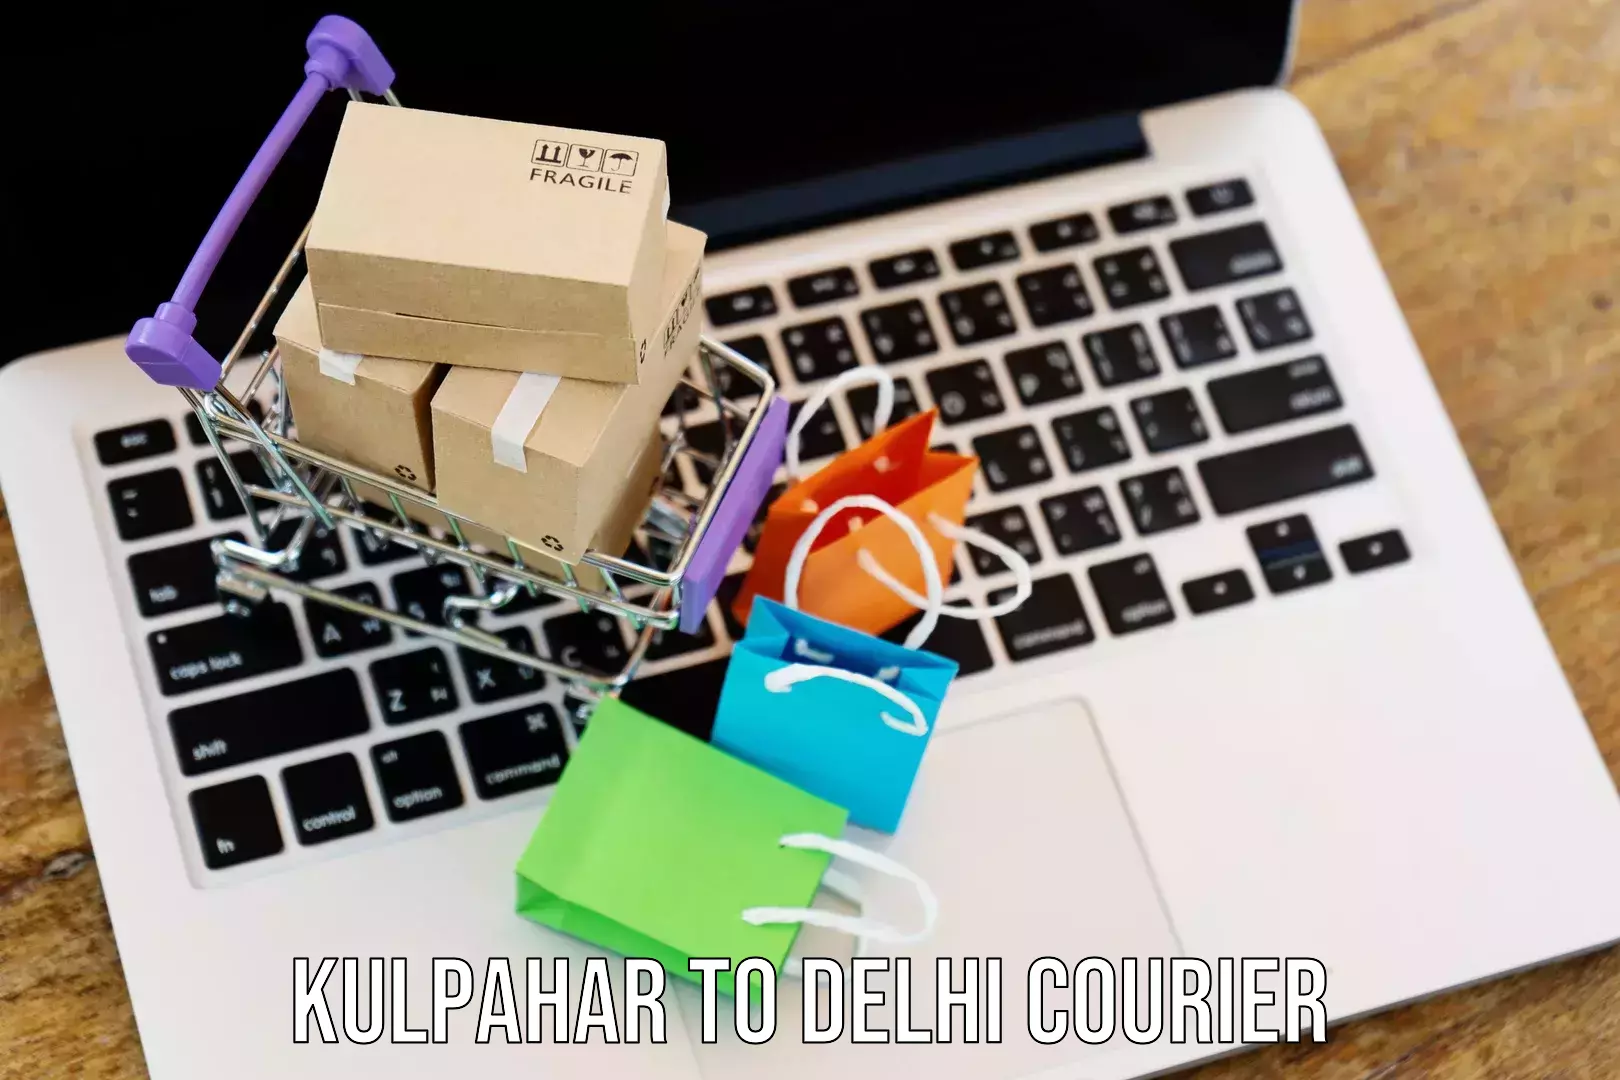 Efficient parcel service Kulpahar to Ashok Vihar